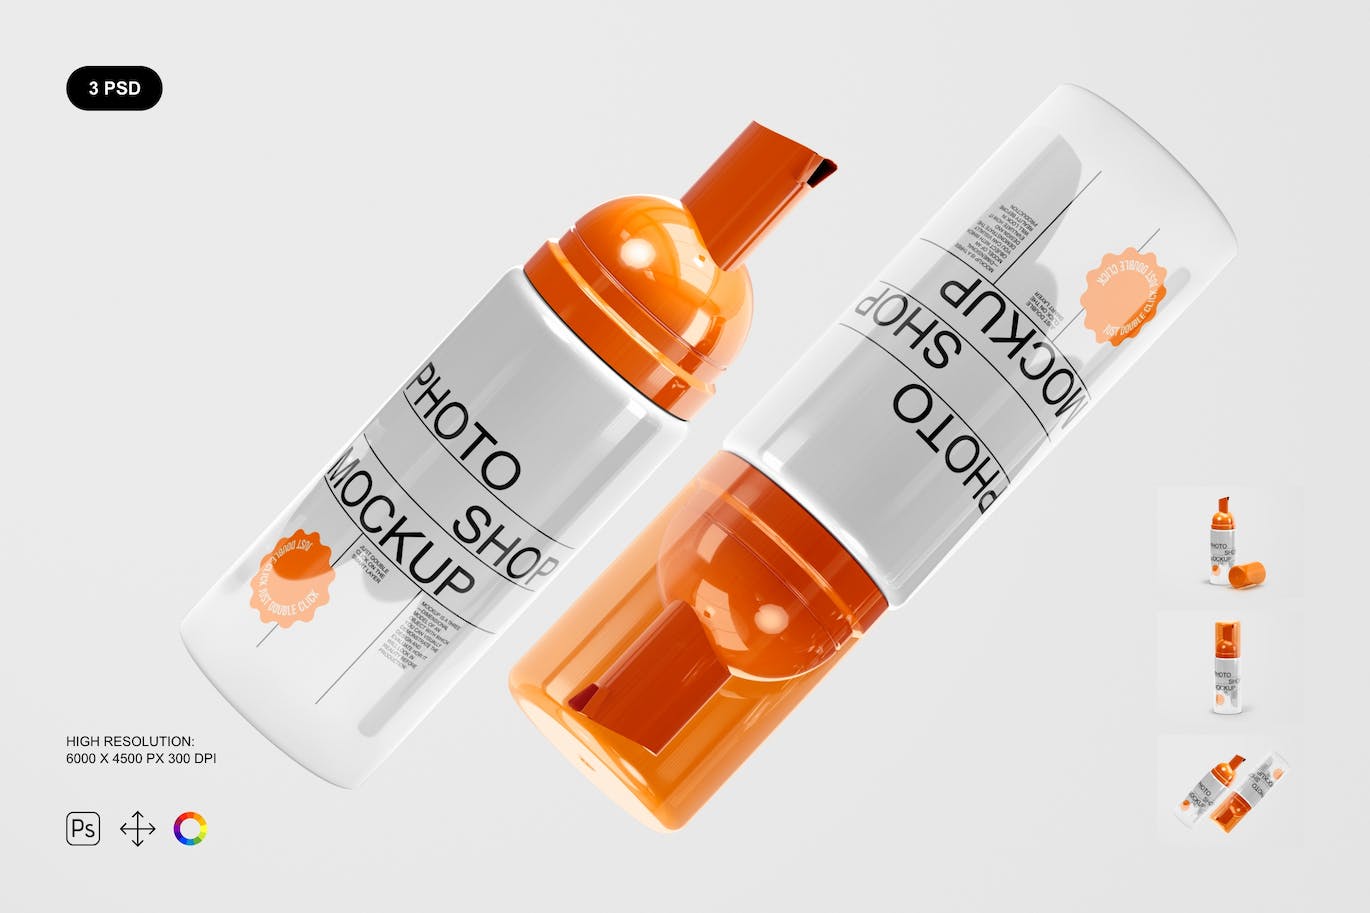 化妆品瓶品牌包装设计样机套装 (PSD)